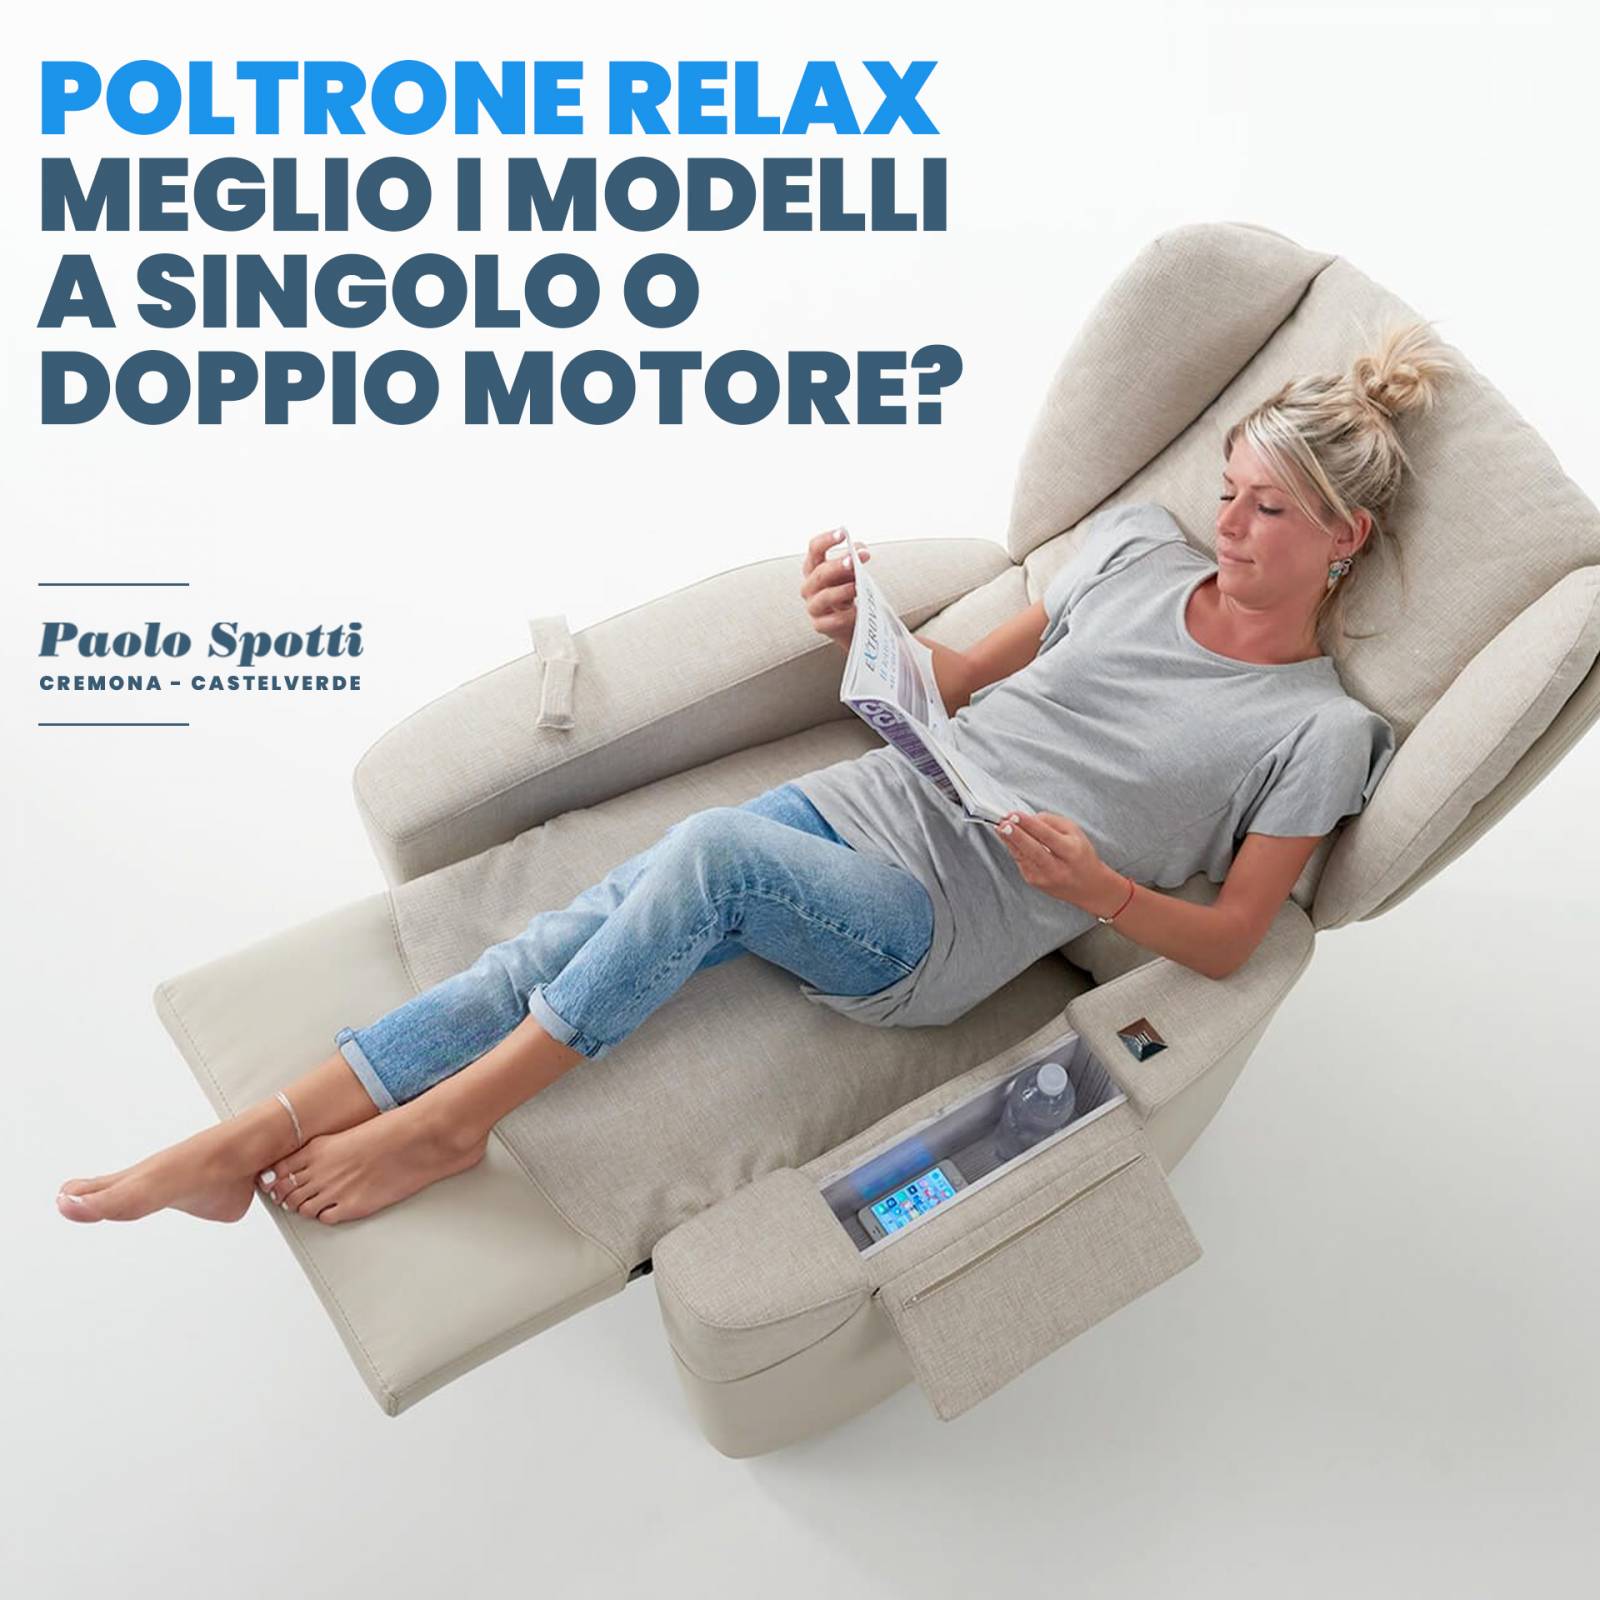 Poltrone Relax: meglio i modelli a singolo o doppio motore? - Paolo Spotti  - Cremona